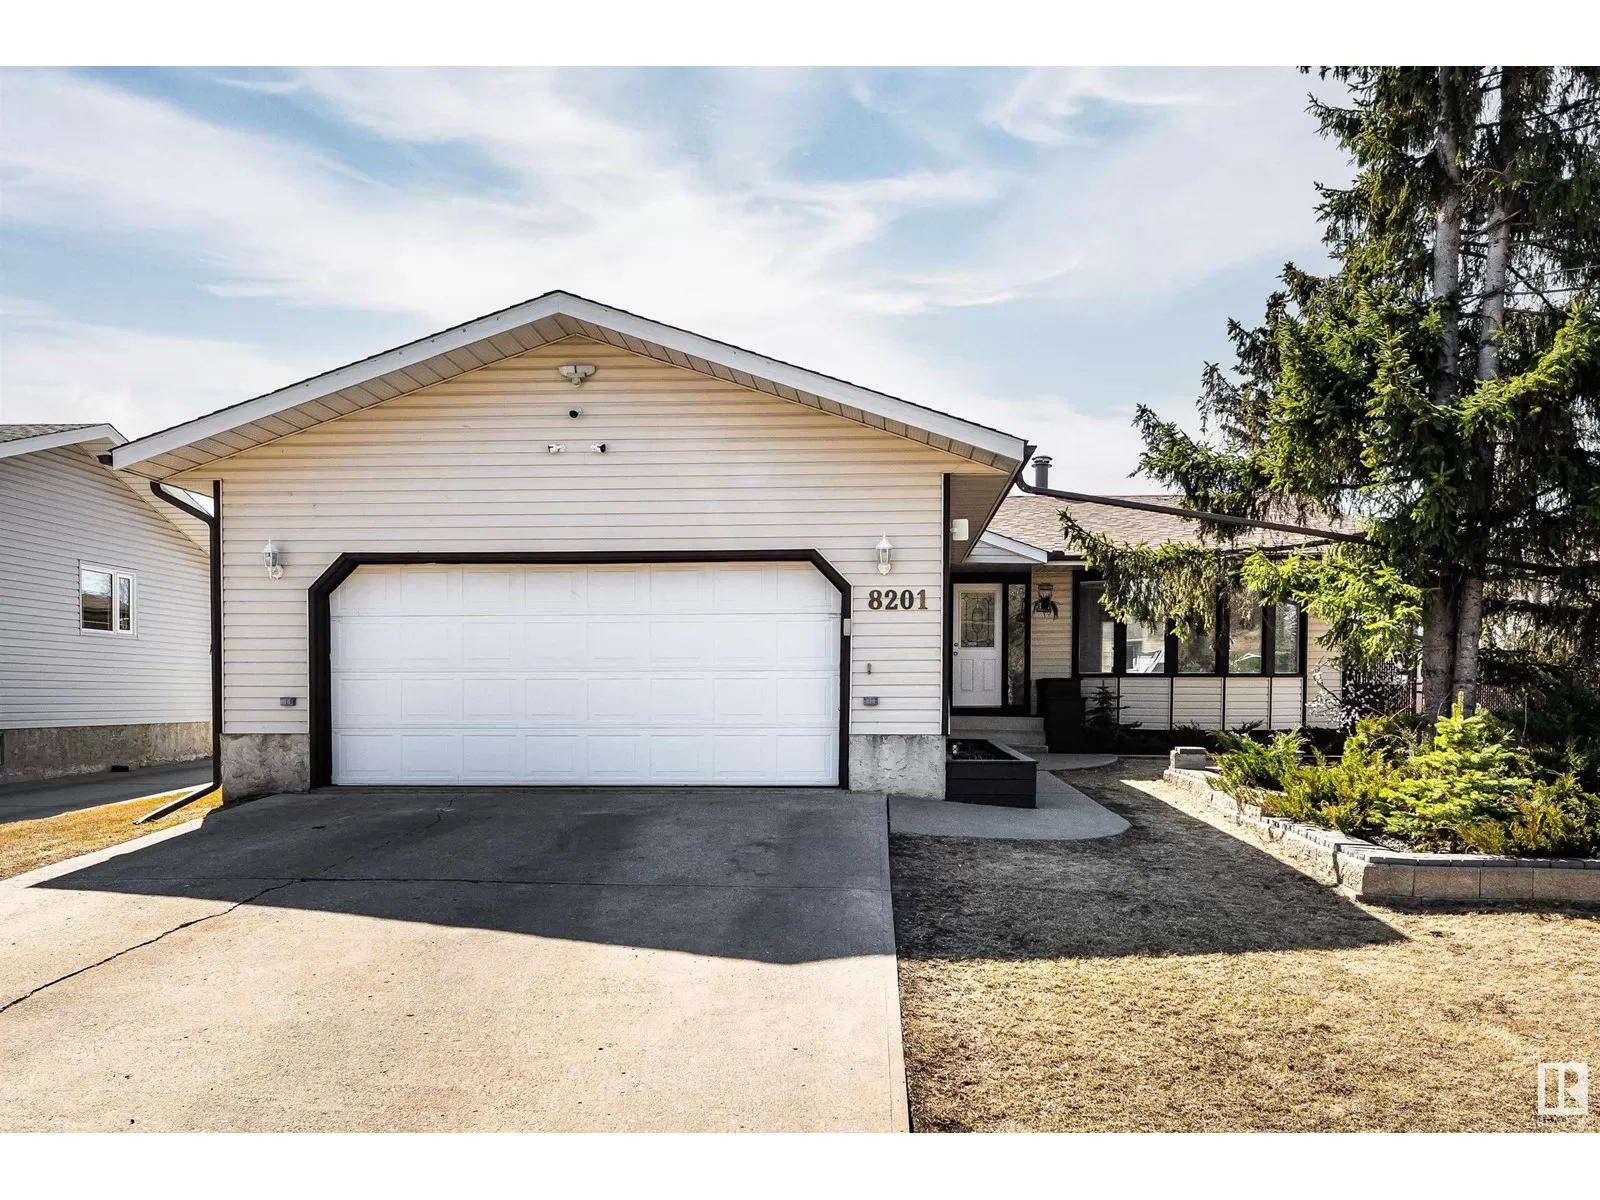 House for rent: 8201 98 Av, Fort Saskatchewan, Alberta T8L 3E2